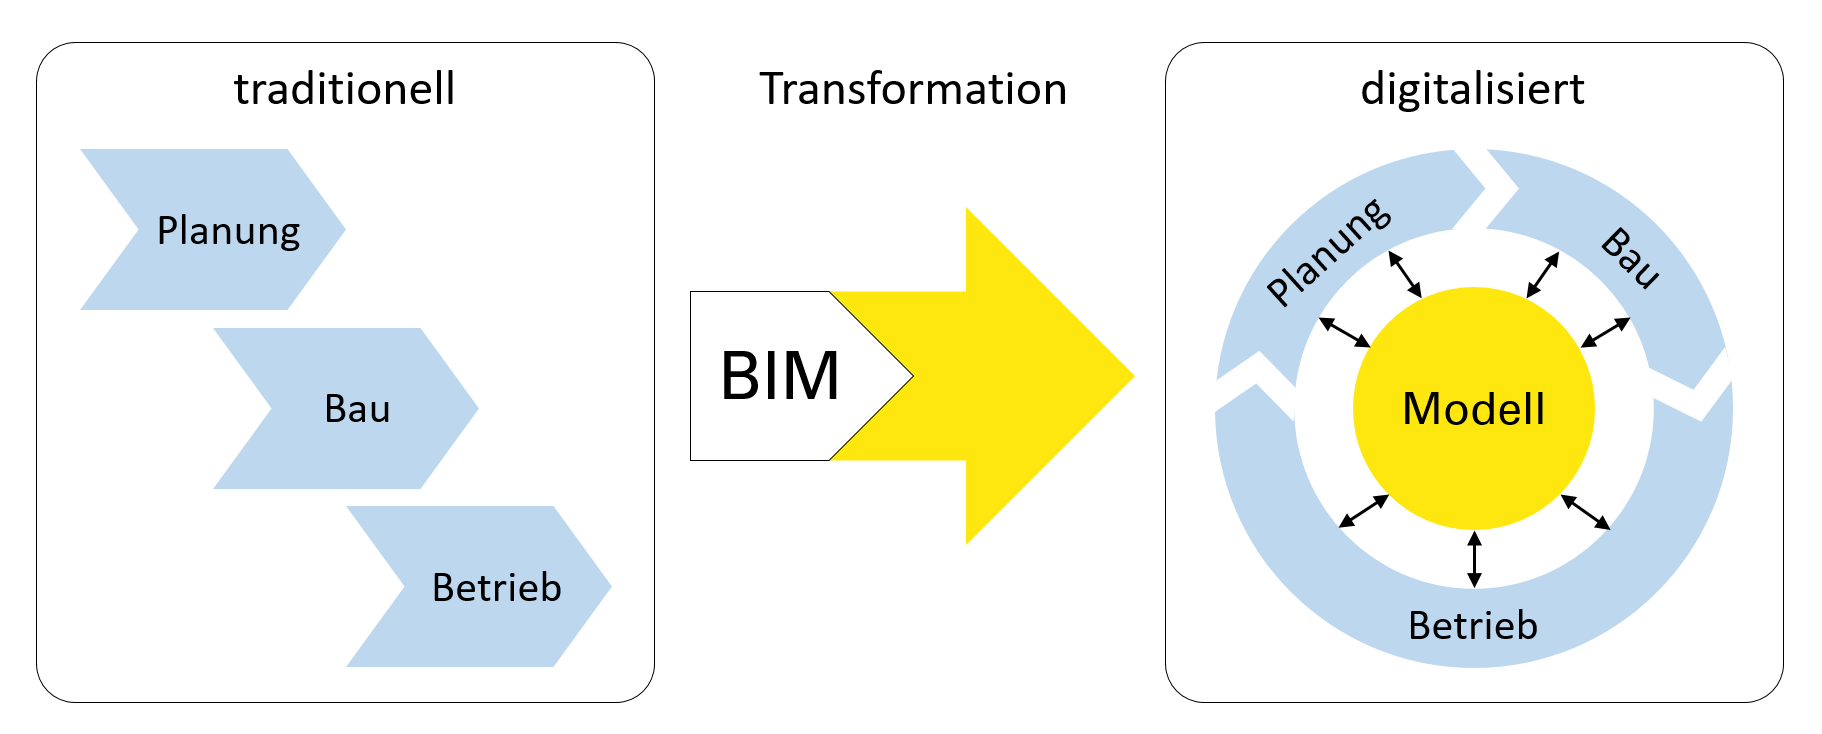 Die Grafik zeig schematisch den Übergang von einem traditionellen Planungsprozess mit den aufeinander folgenden Phasen "Planung", "Bau" und "Betrieb" mittels BIM zu einem digitalisierten Prozess, in dem die Phasen gleichzeitig ablaufen können und in einem BIM-Modell zusammengeführt werden.